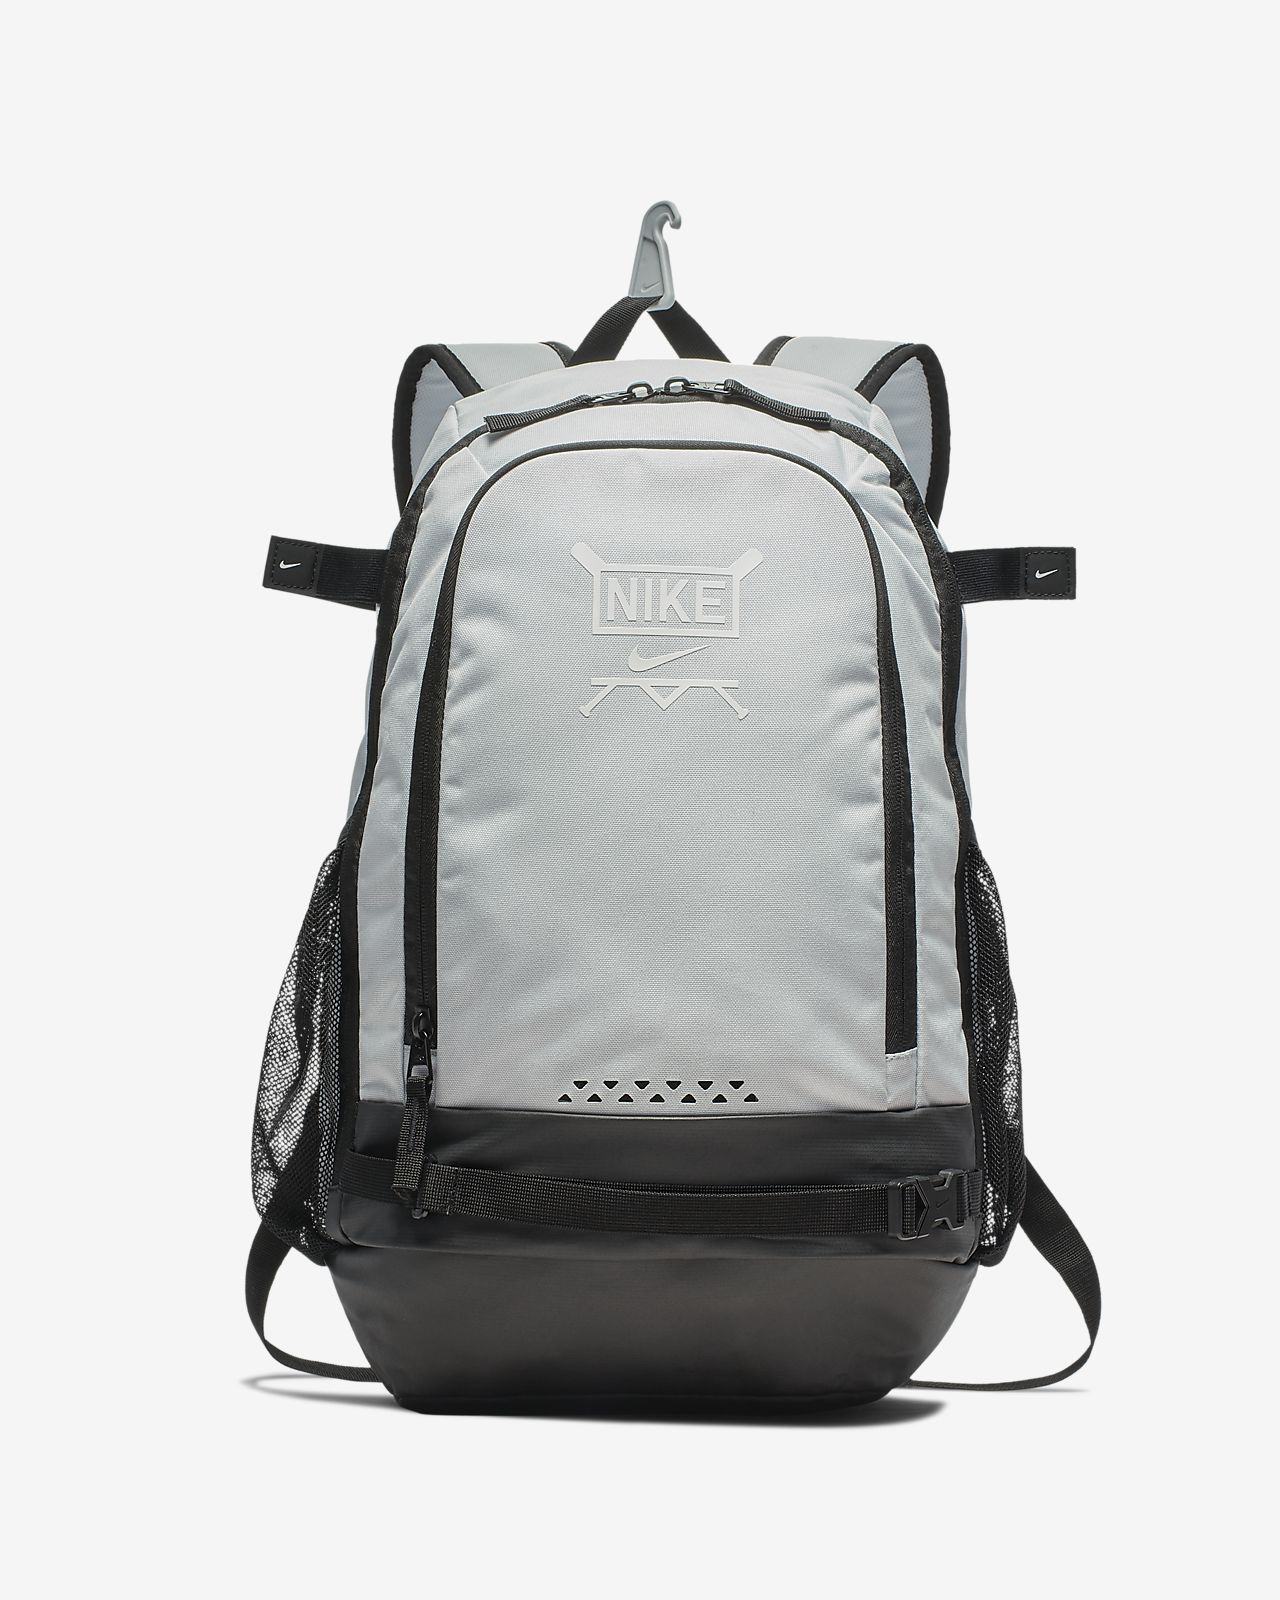 white nike backpack